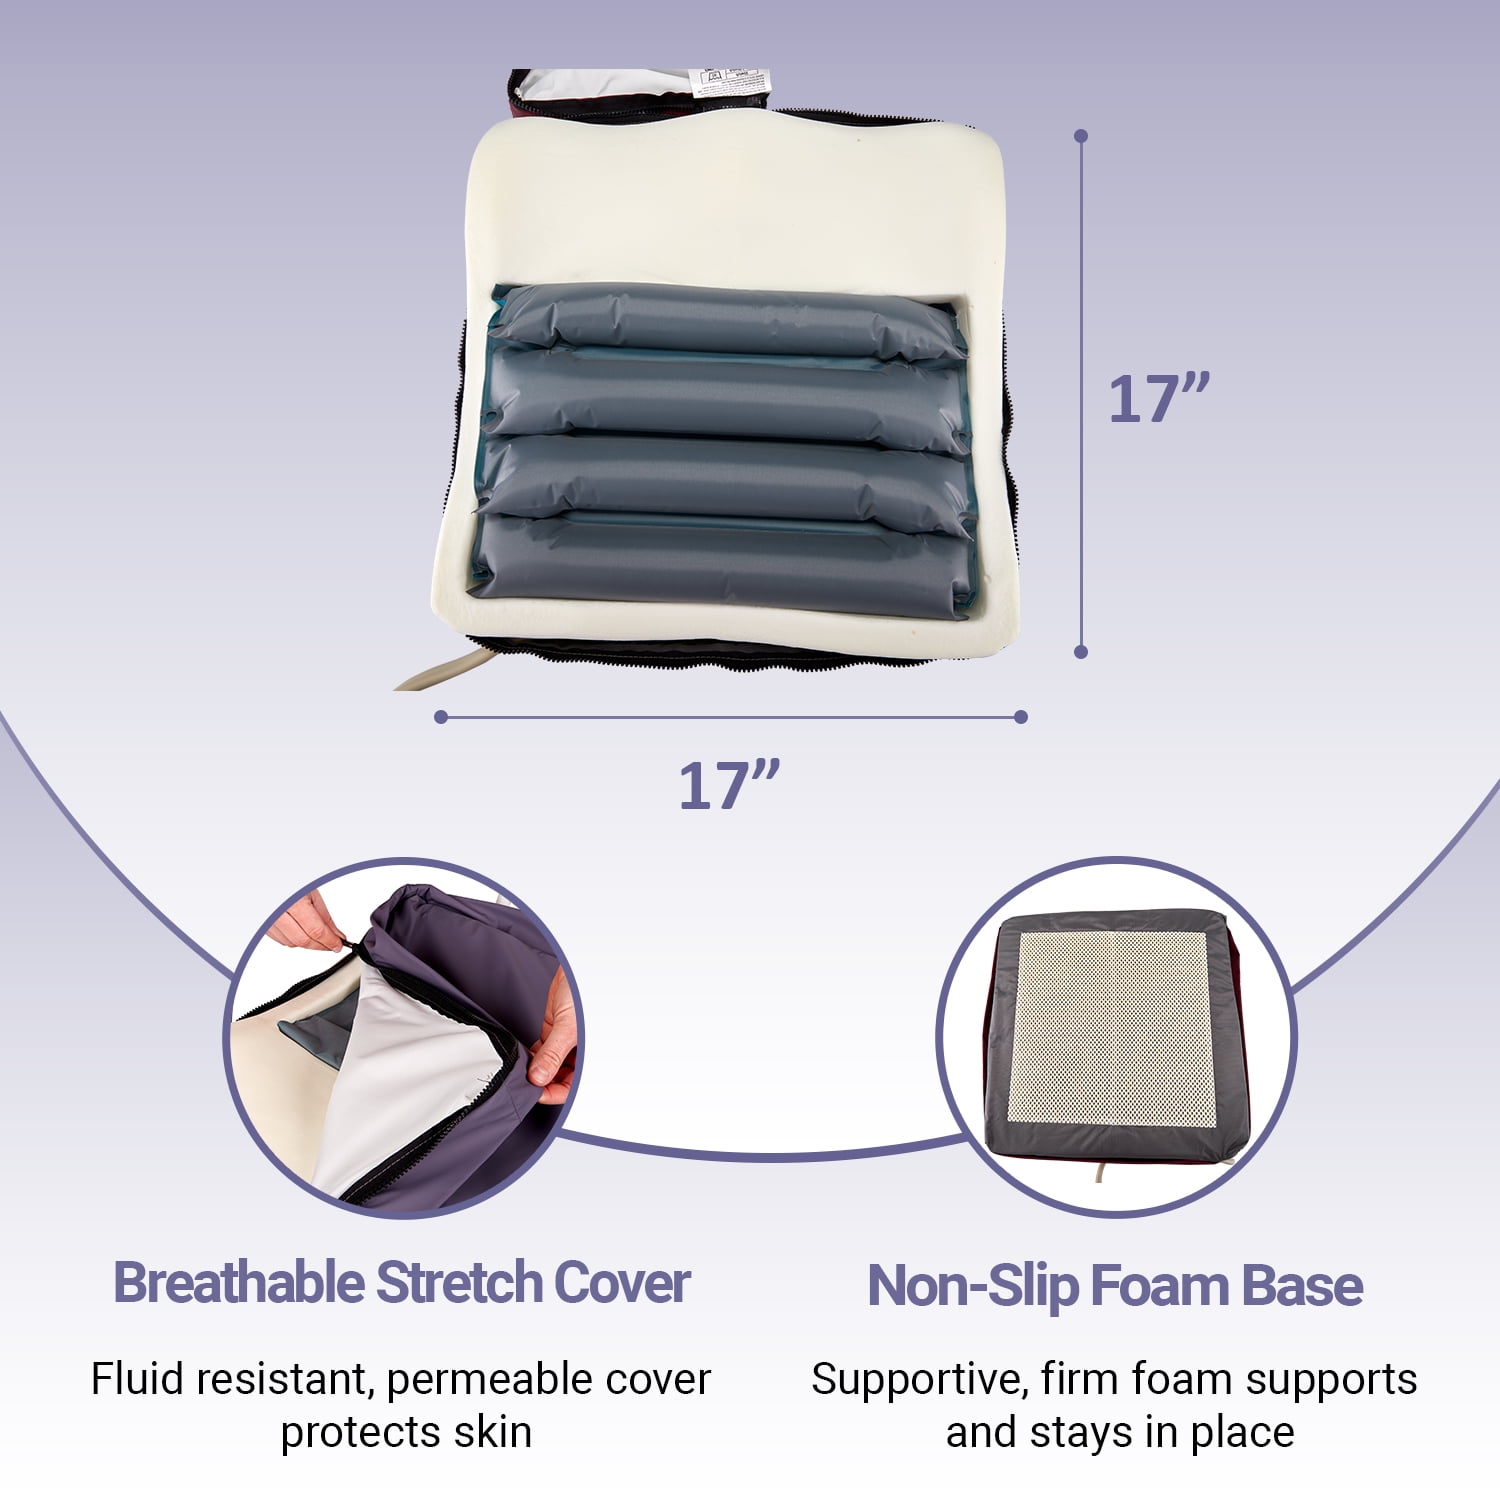 MobiCushion Alternating Air Pressure Cushion : pressure sore healing cushion